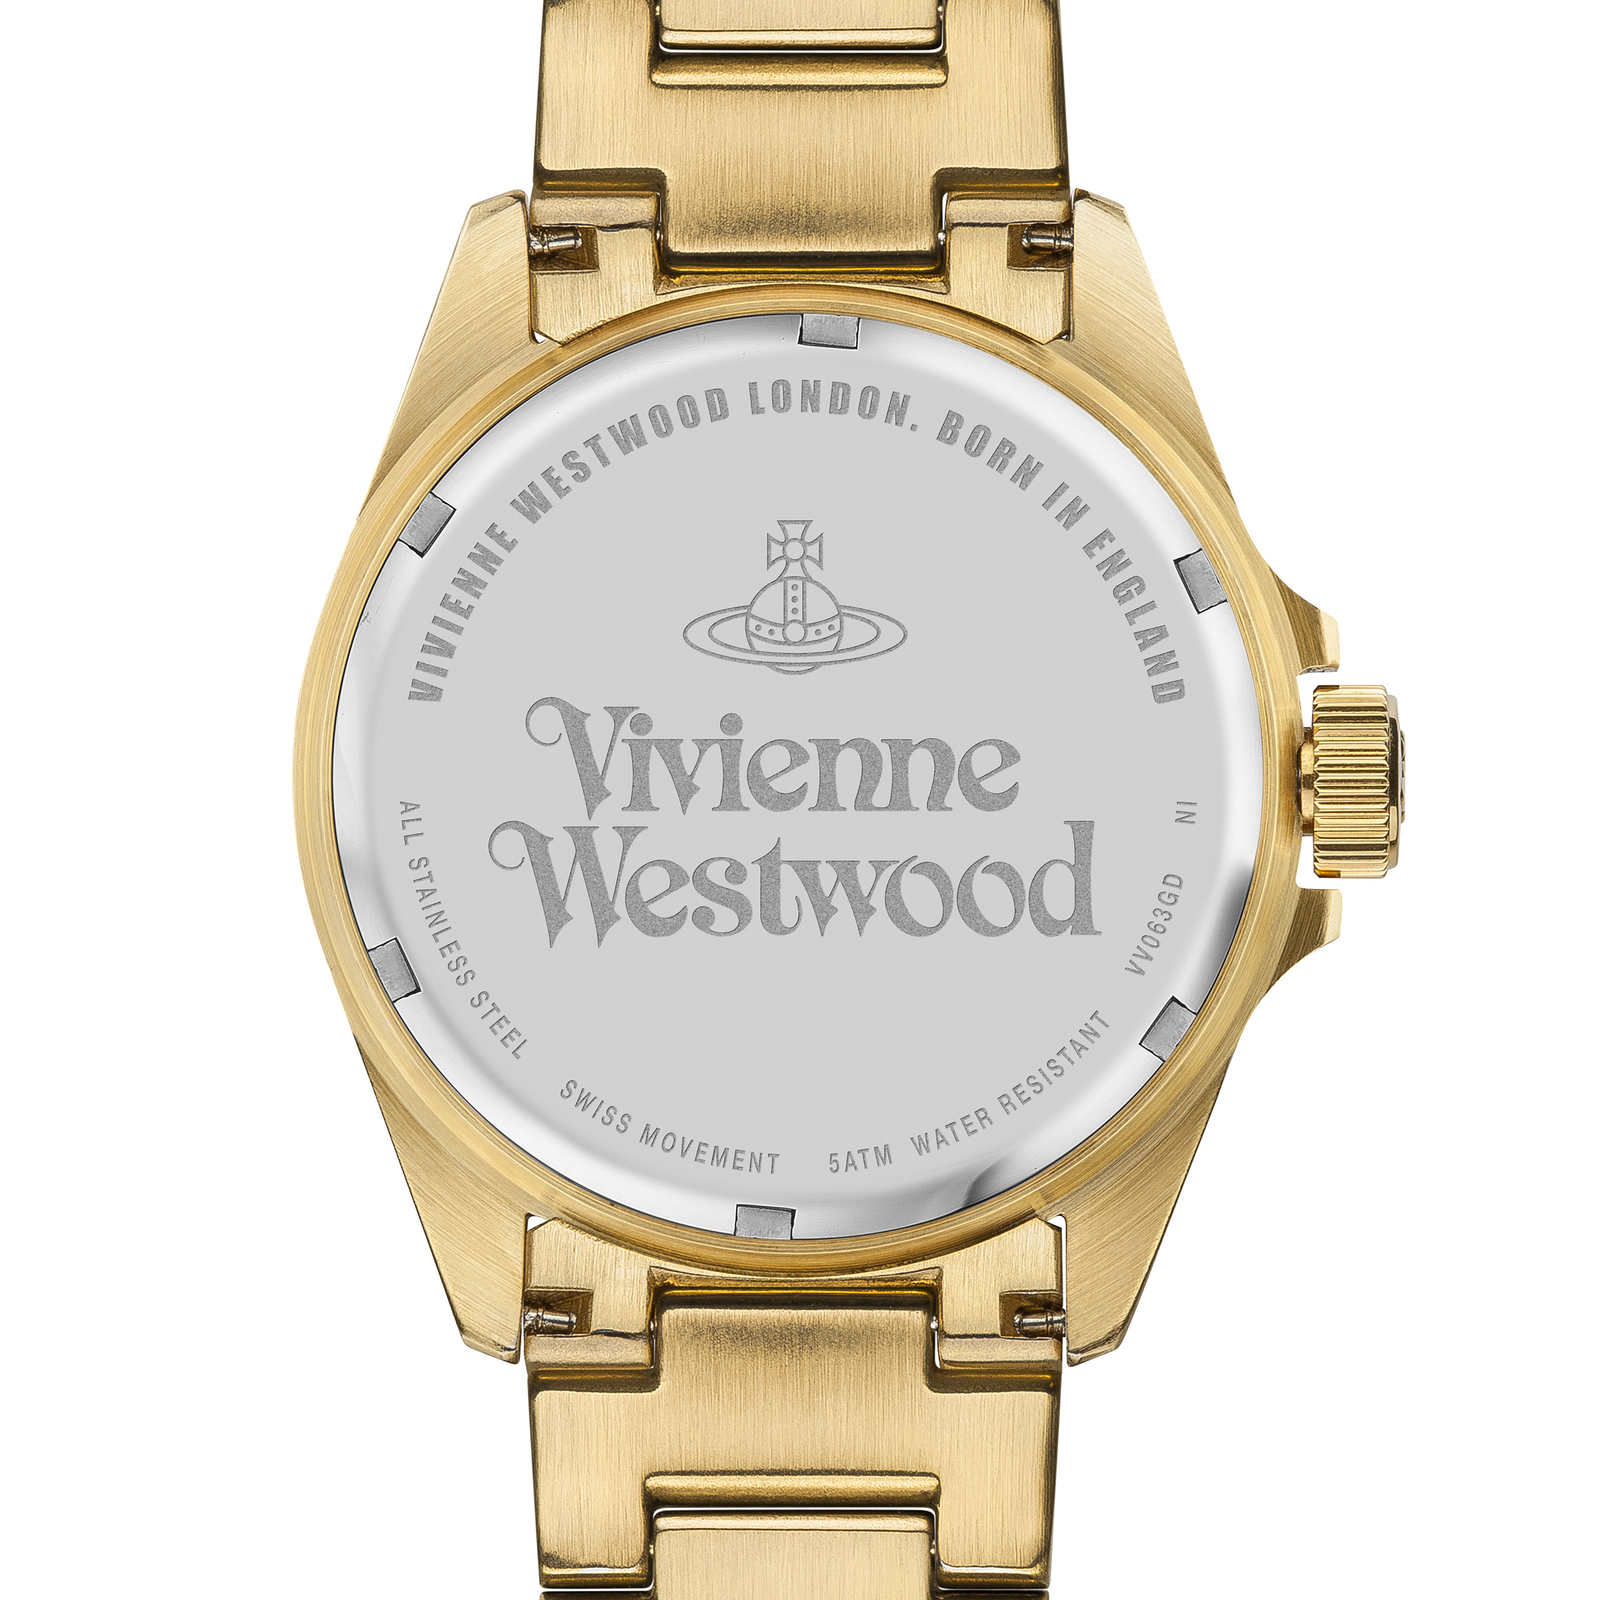 Vivienne Westwood Camden Lock Gold Plated Watch | Designer Watches ...